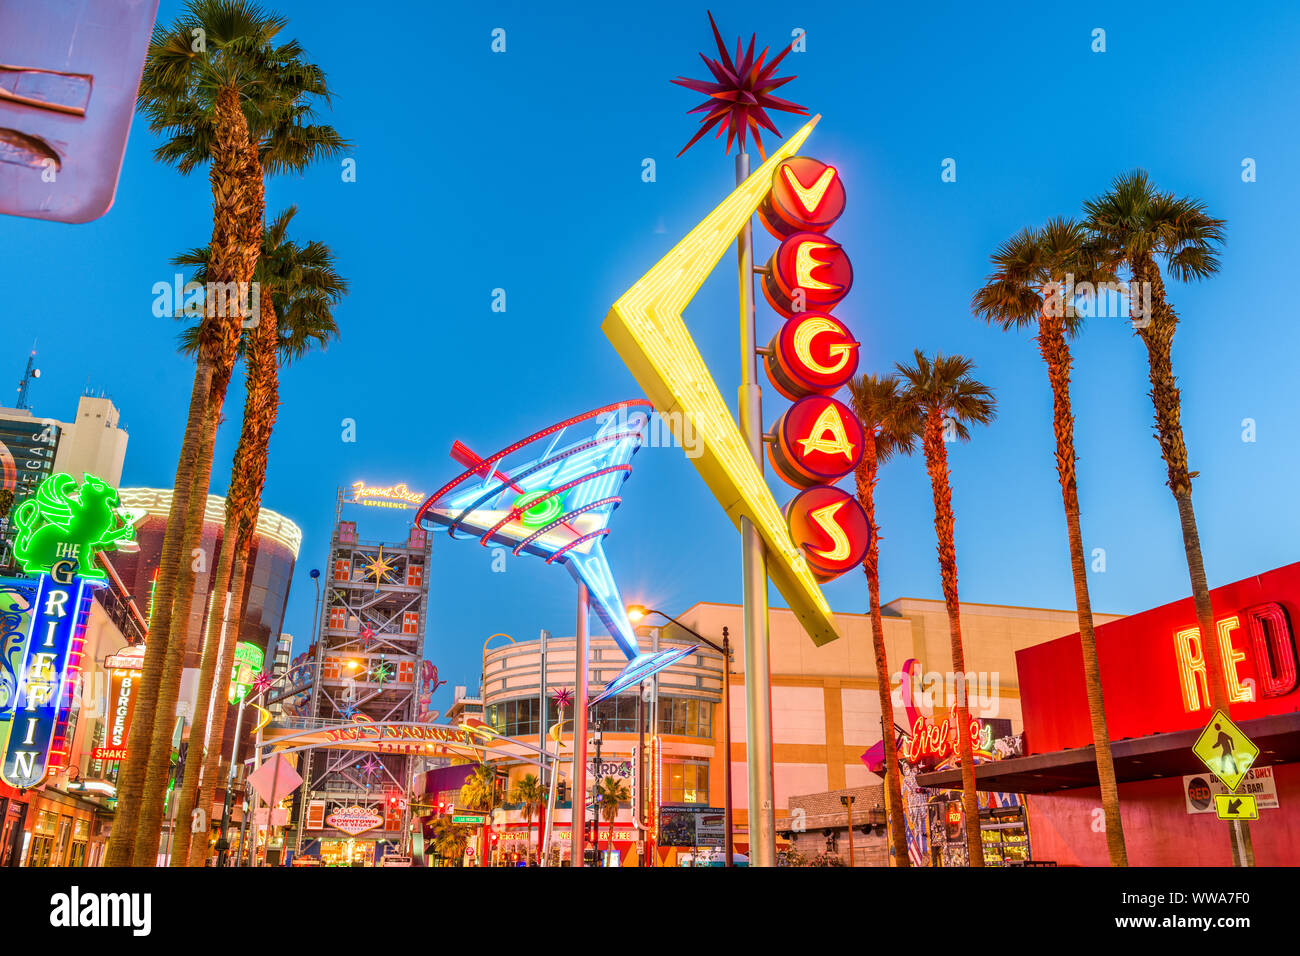 LAS VEGAS, Nevada - Mayo 13, 2019: Fremont East Distrito de Las Vegas al amanecer. Se encuentra entre las más famosas calles del Valle de Las Vegas. Foto de stock